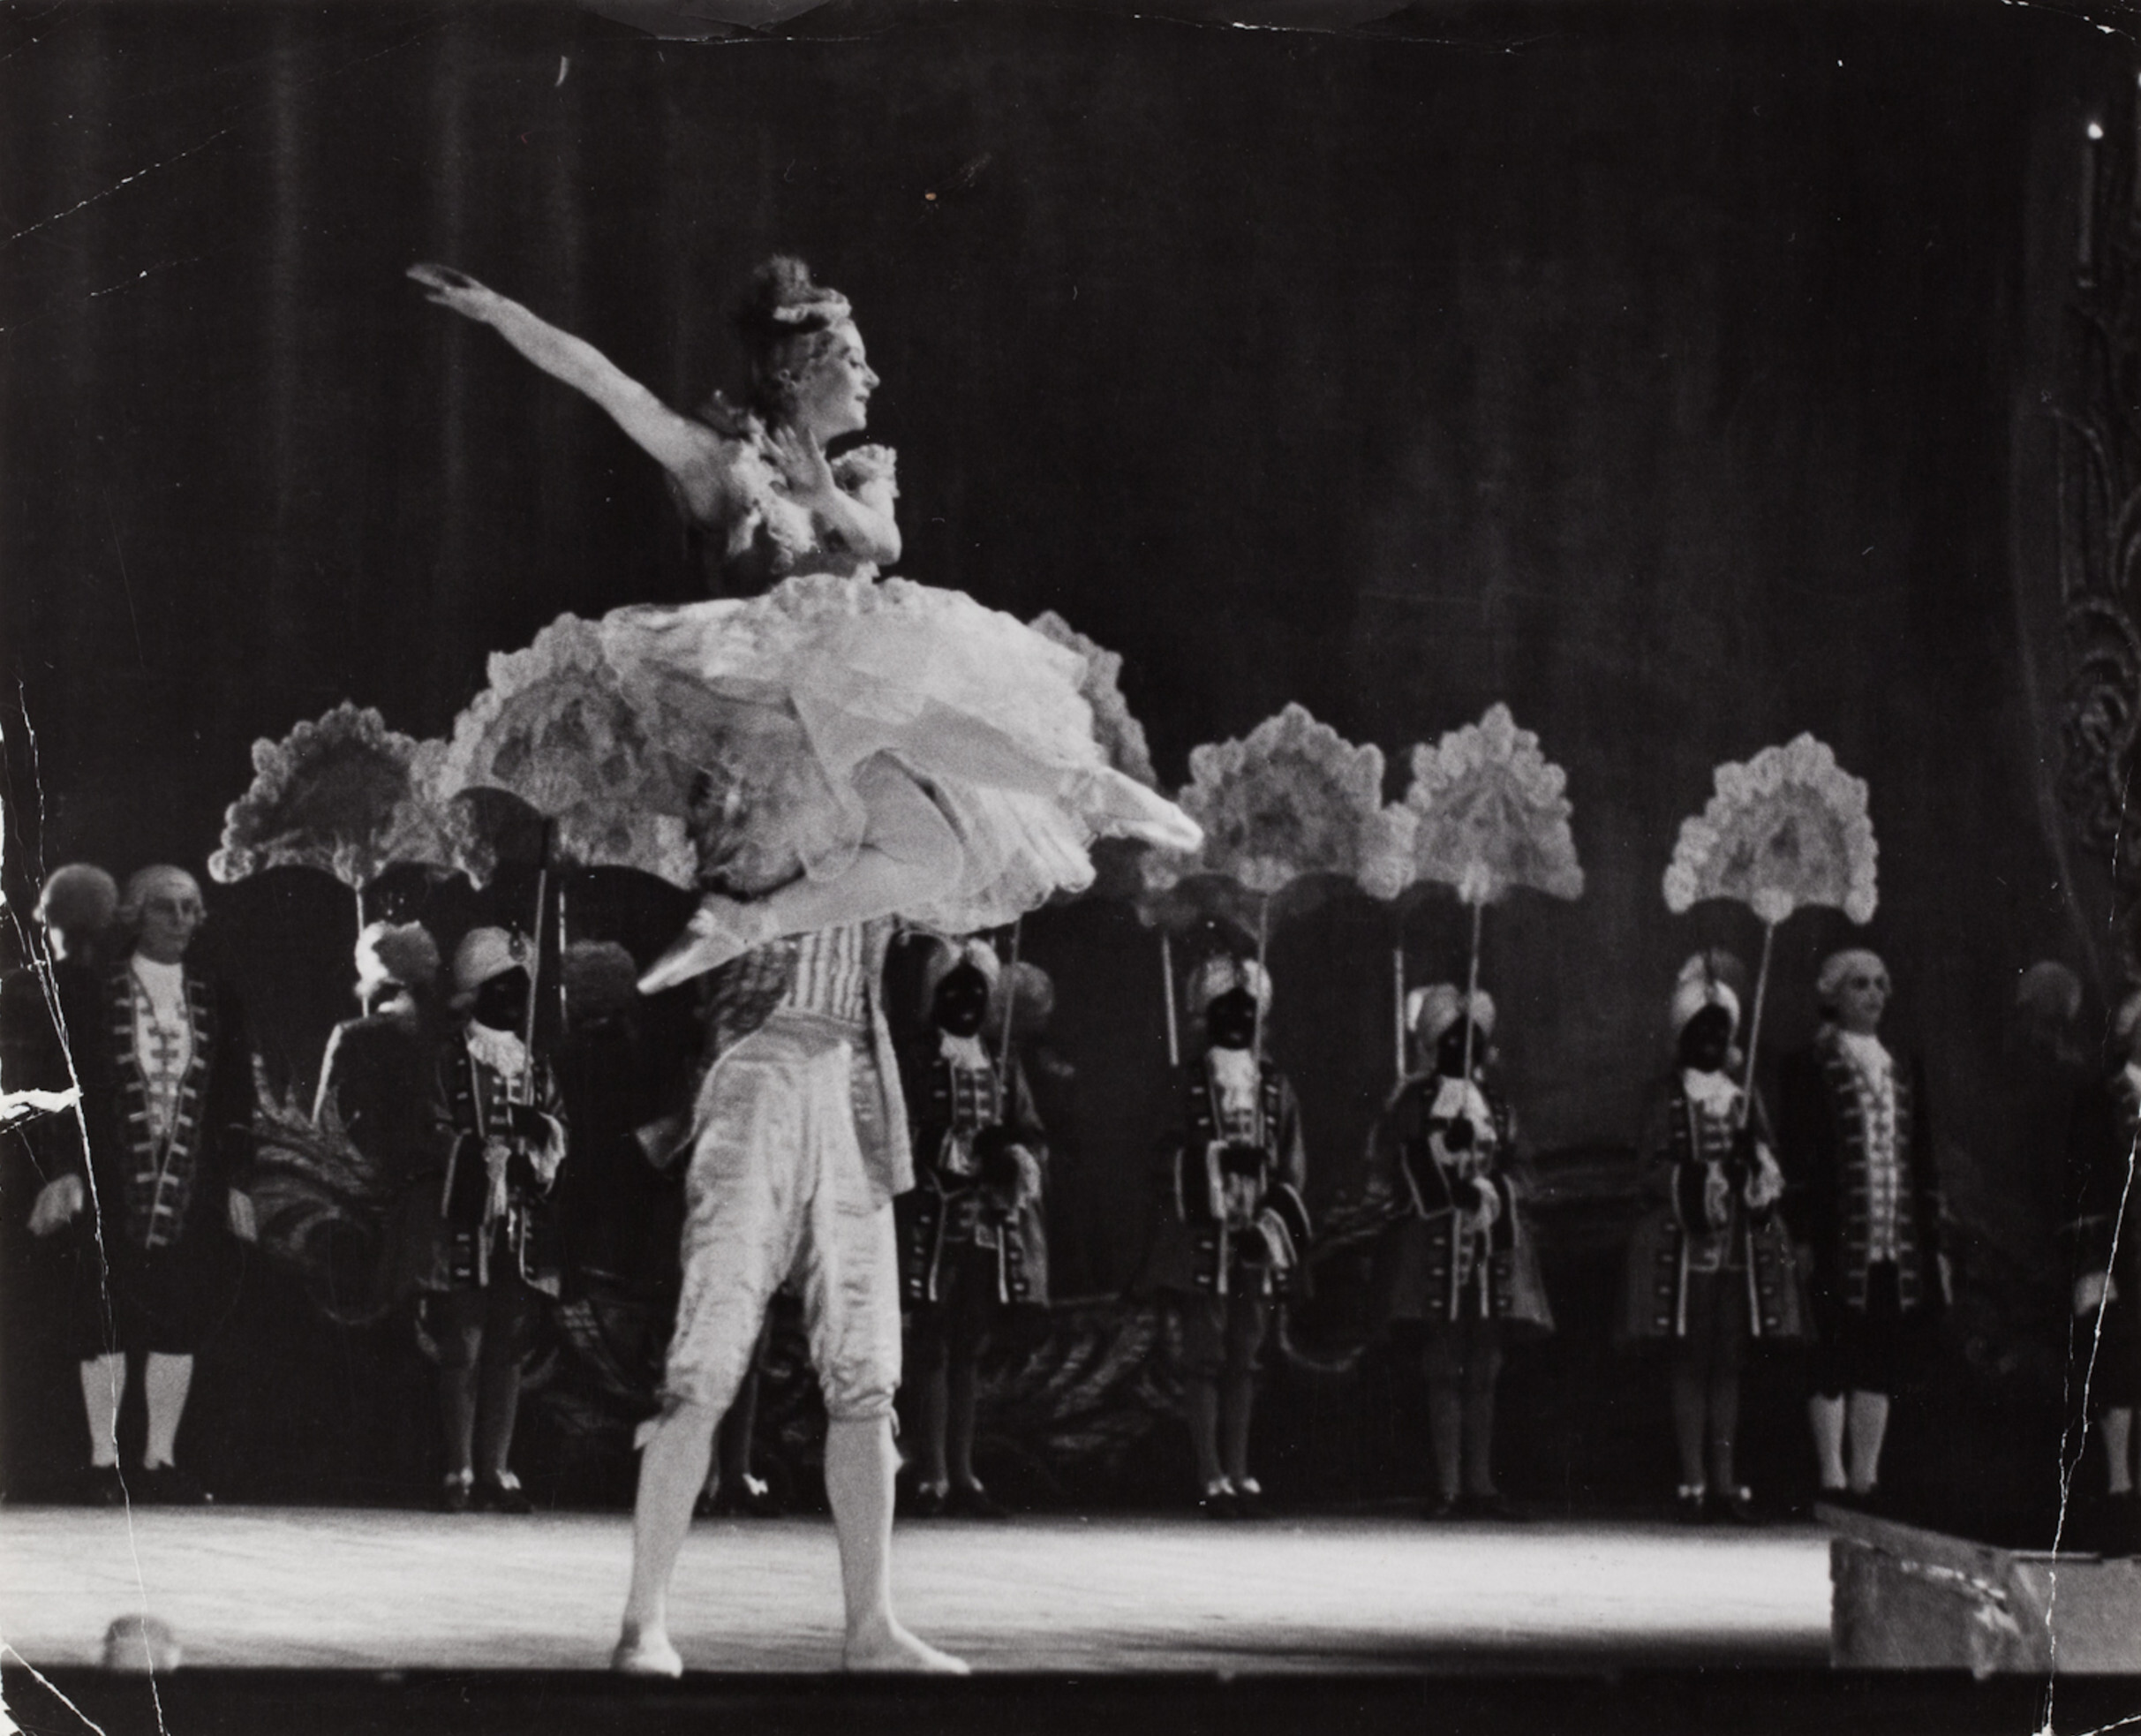 Балетный спектакль в Большом театре, Москва, 1947 год. Фотограф Роберт Капа